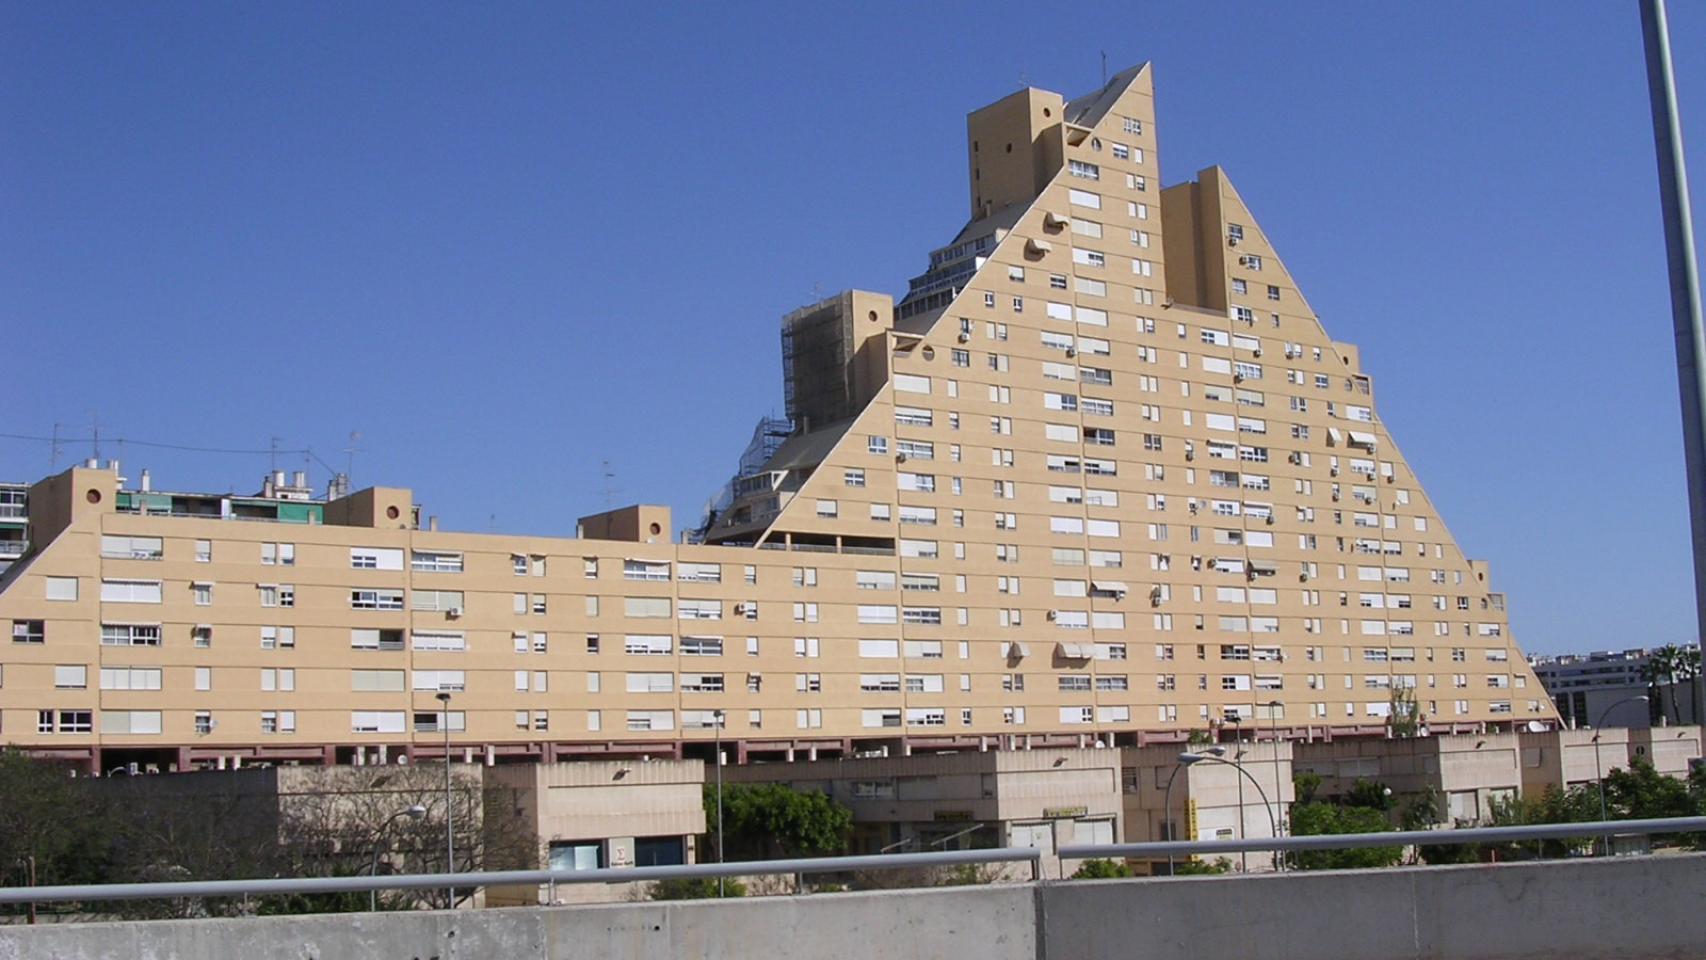 La silueta de la Pirámide lo ha convertido en uno de los edificios más conocidos en Alicante.